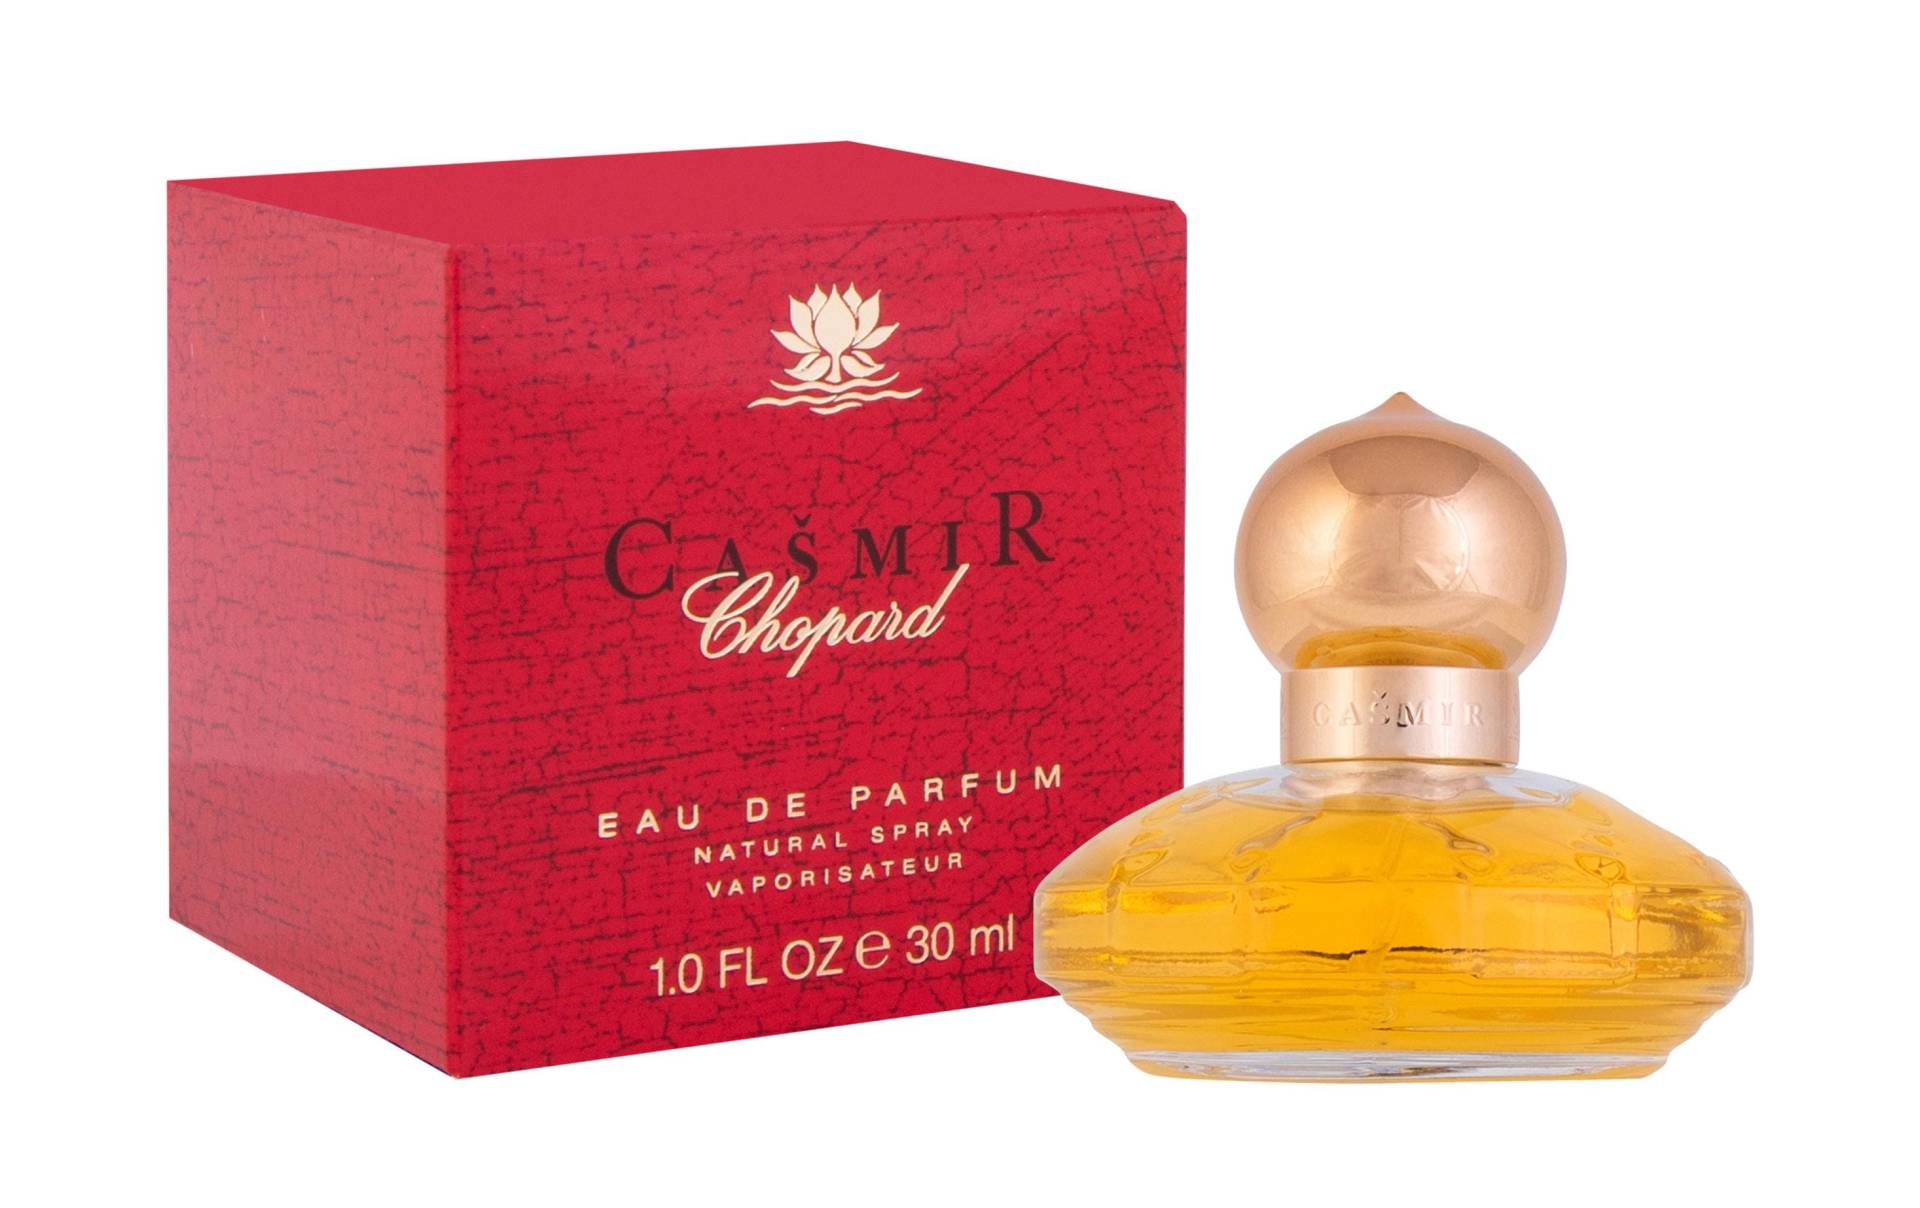 Chopard Eau de Parfum »Chopard Eau de Parfum Casmir 30 ml« von Chopard